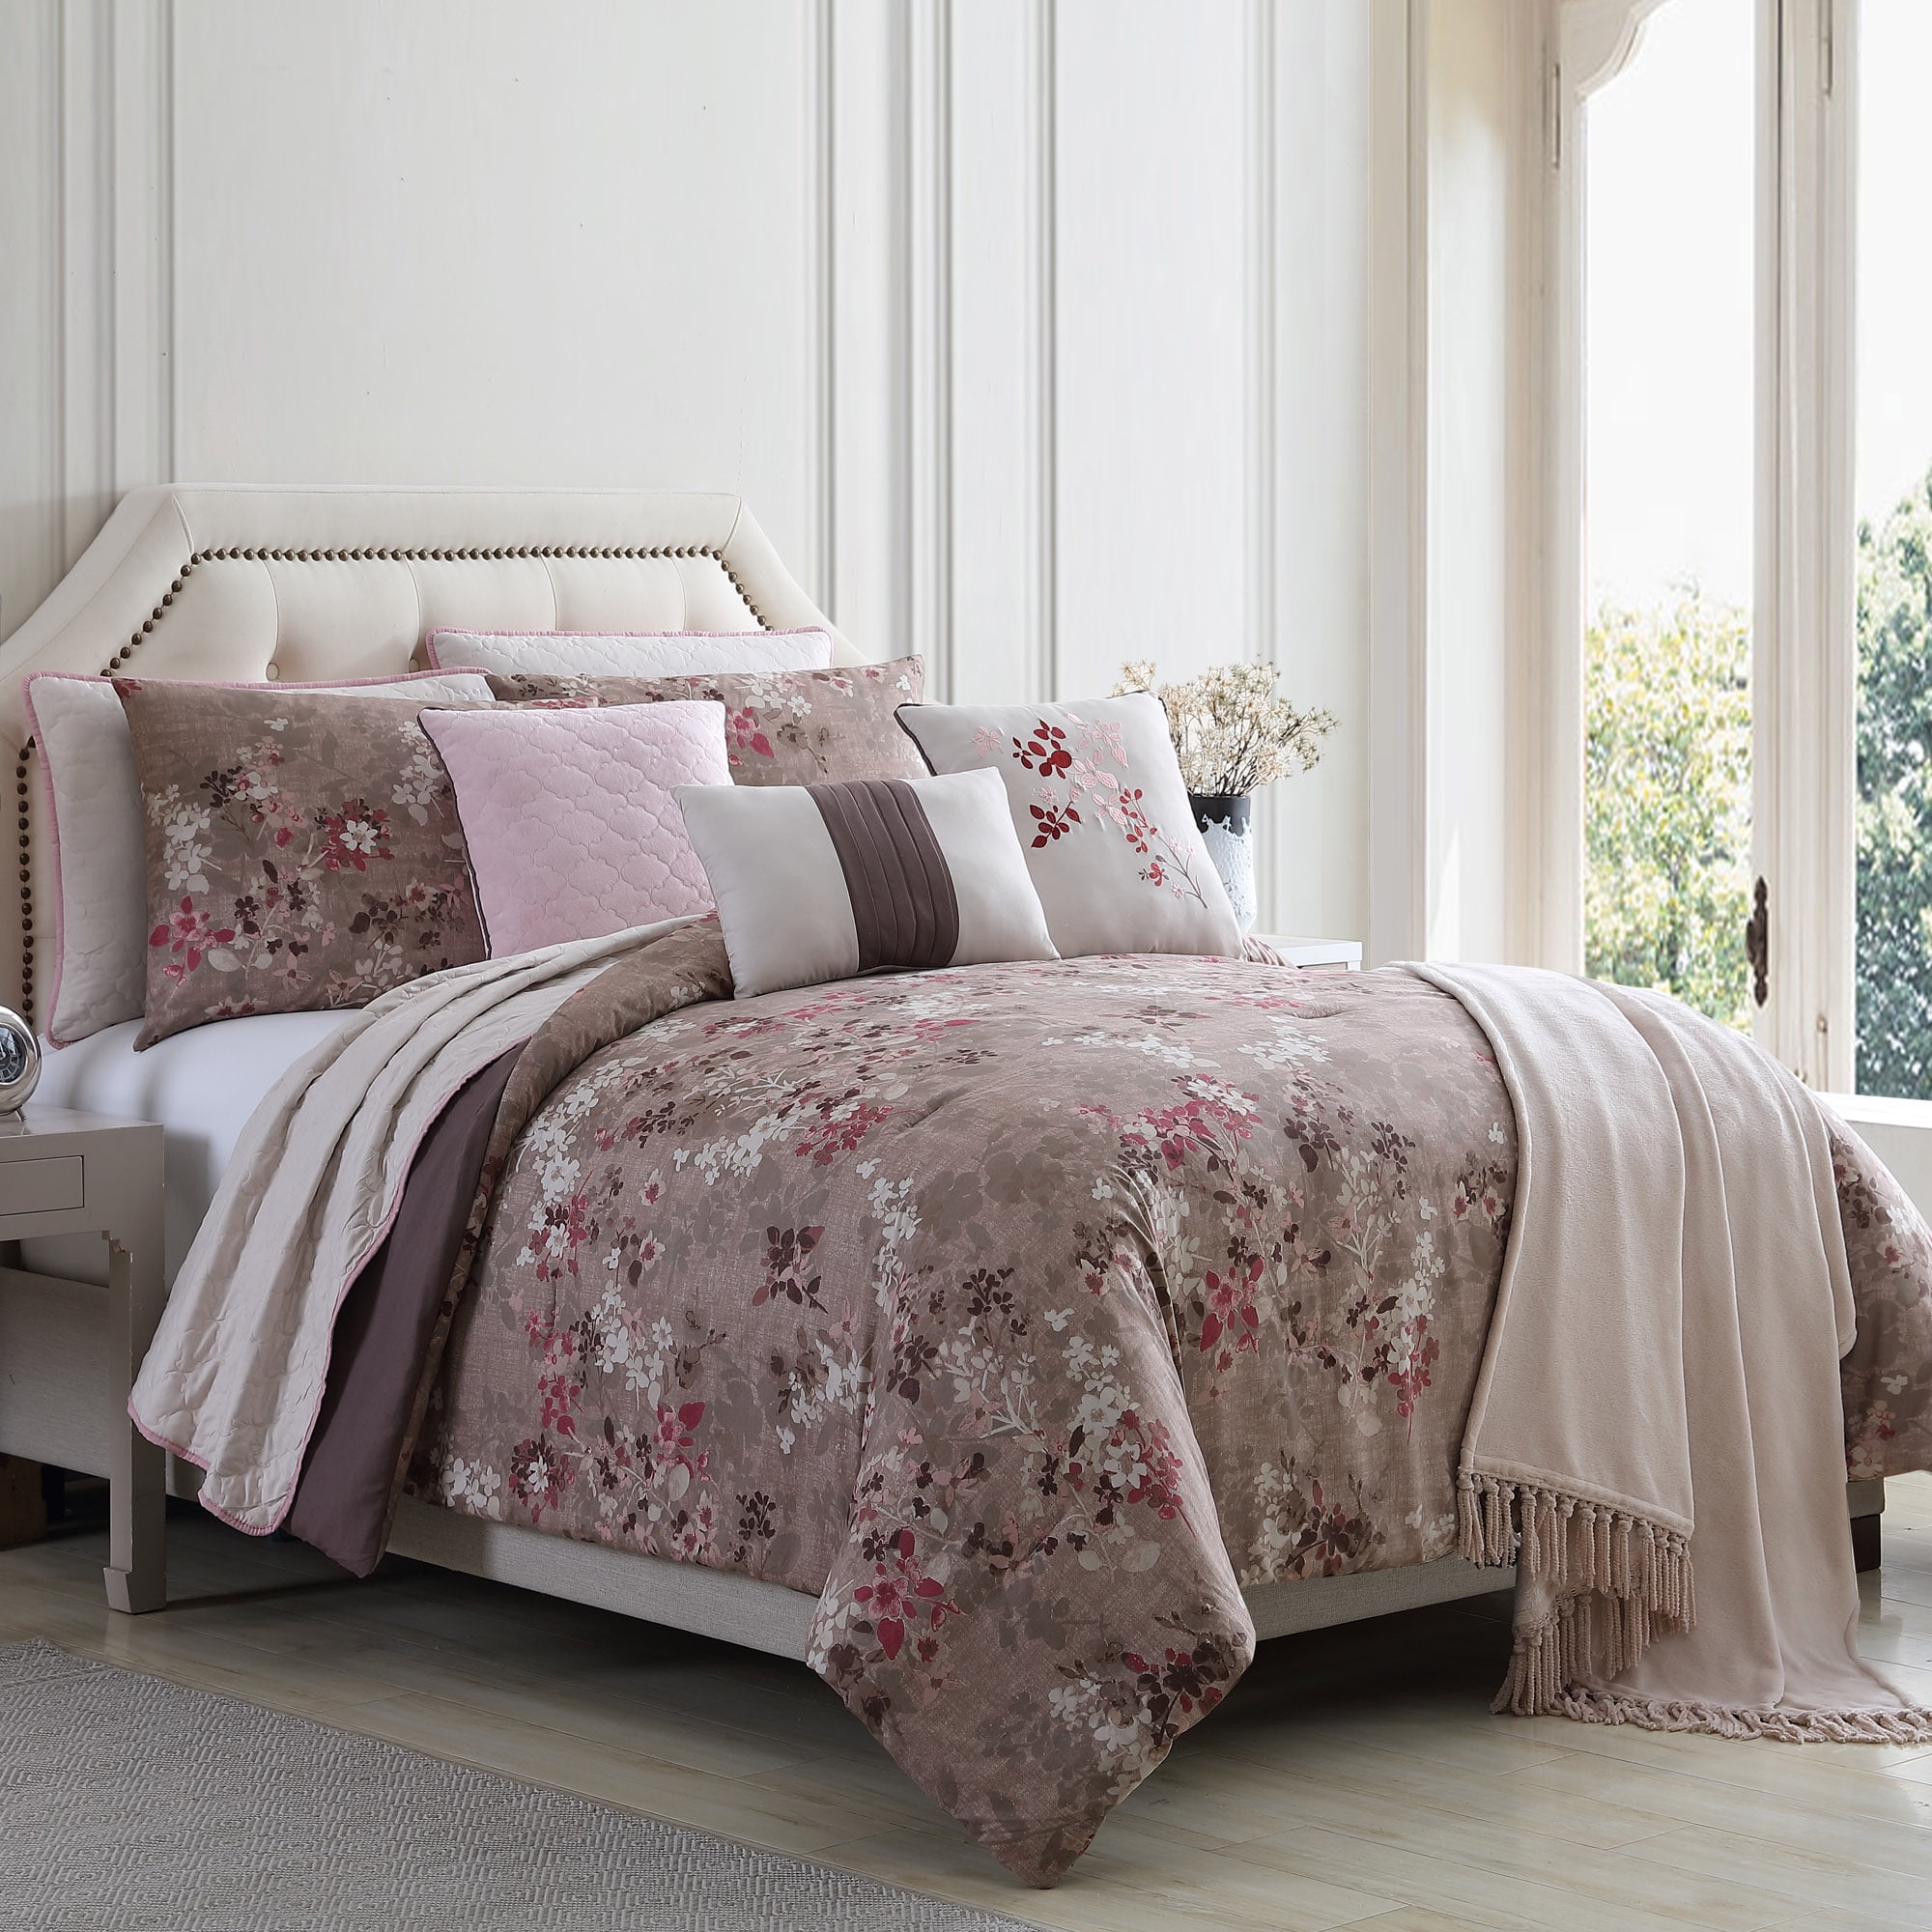 Luxury Embellished Floral Duvet Bedding Set All Sizes Black Pink Green Burgundy 